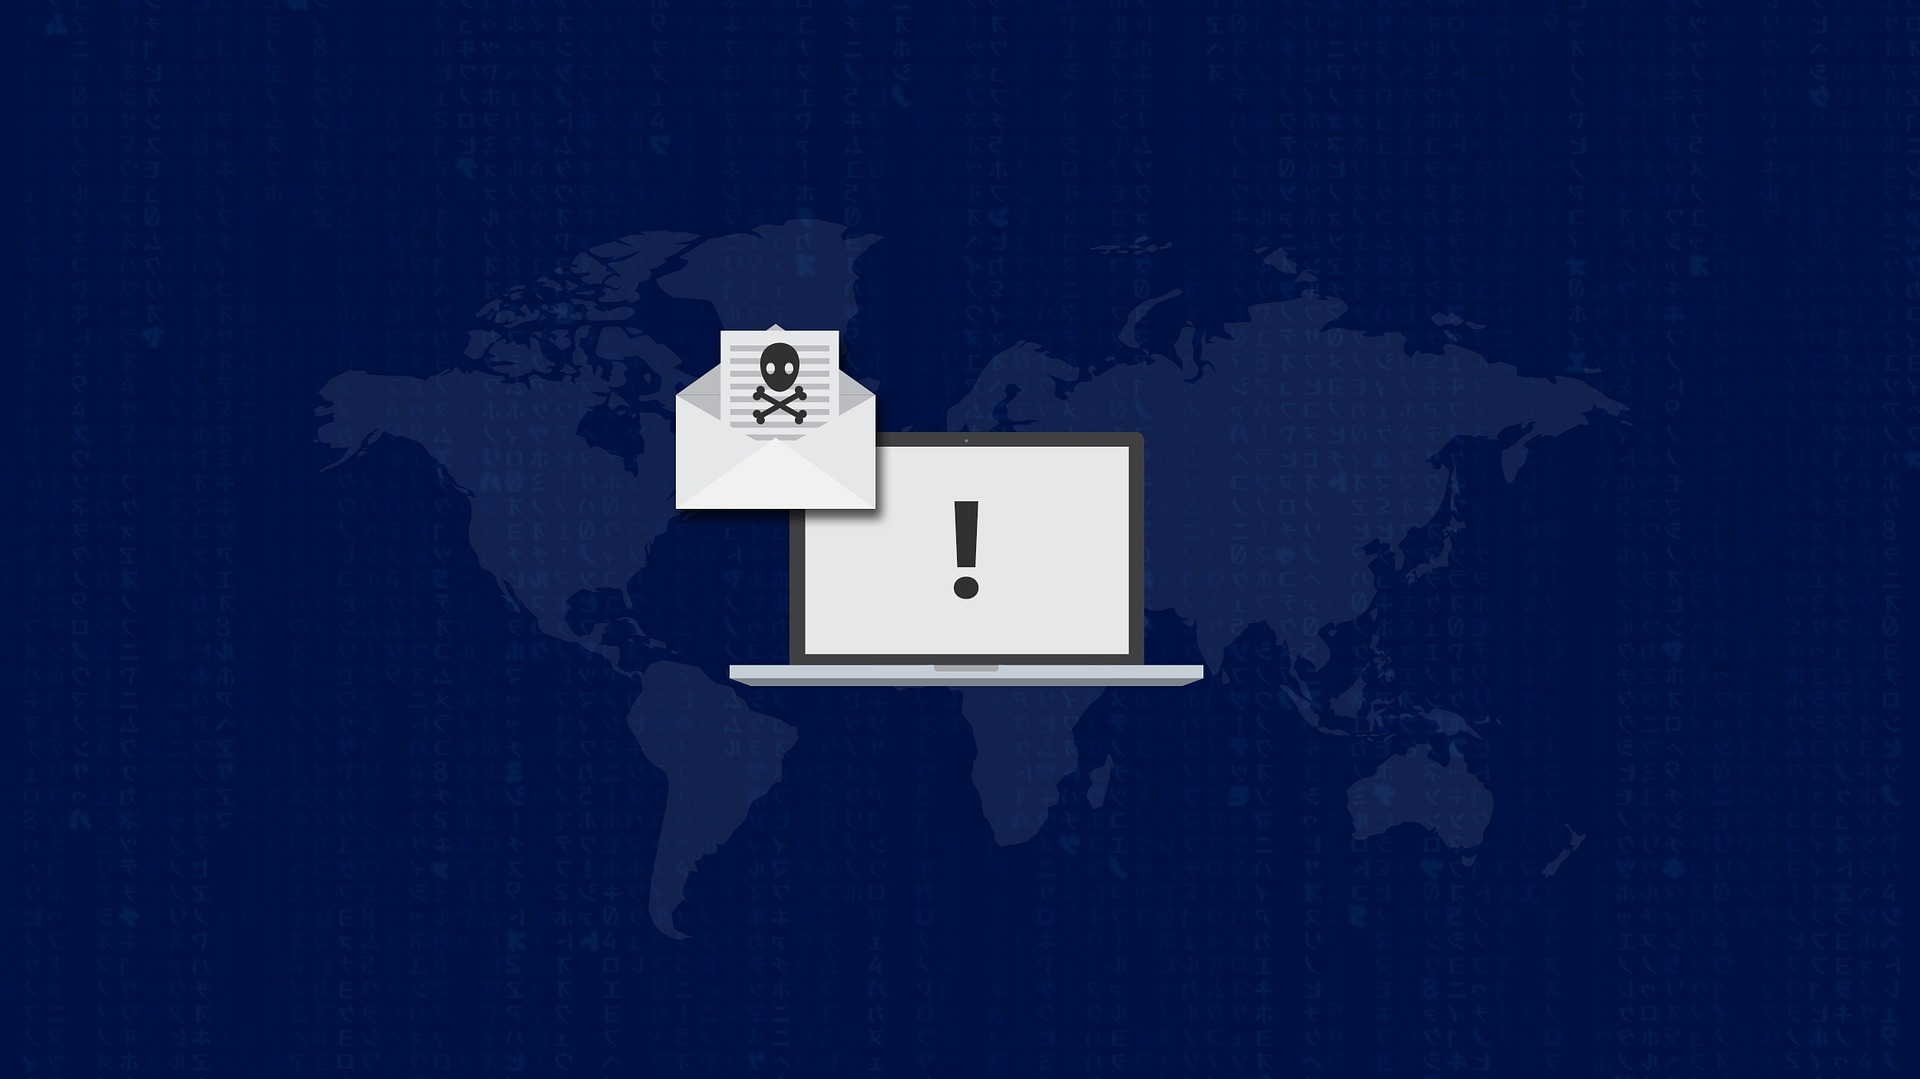 Brasil está entre os cinco países com alta atividade de malware Emotet, diz relatório